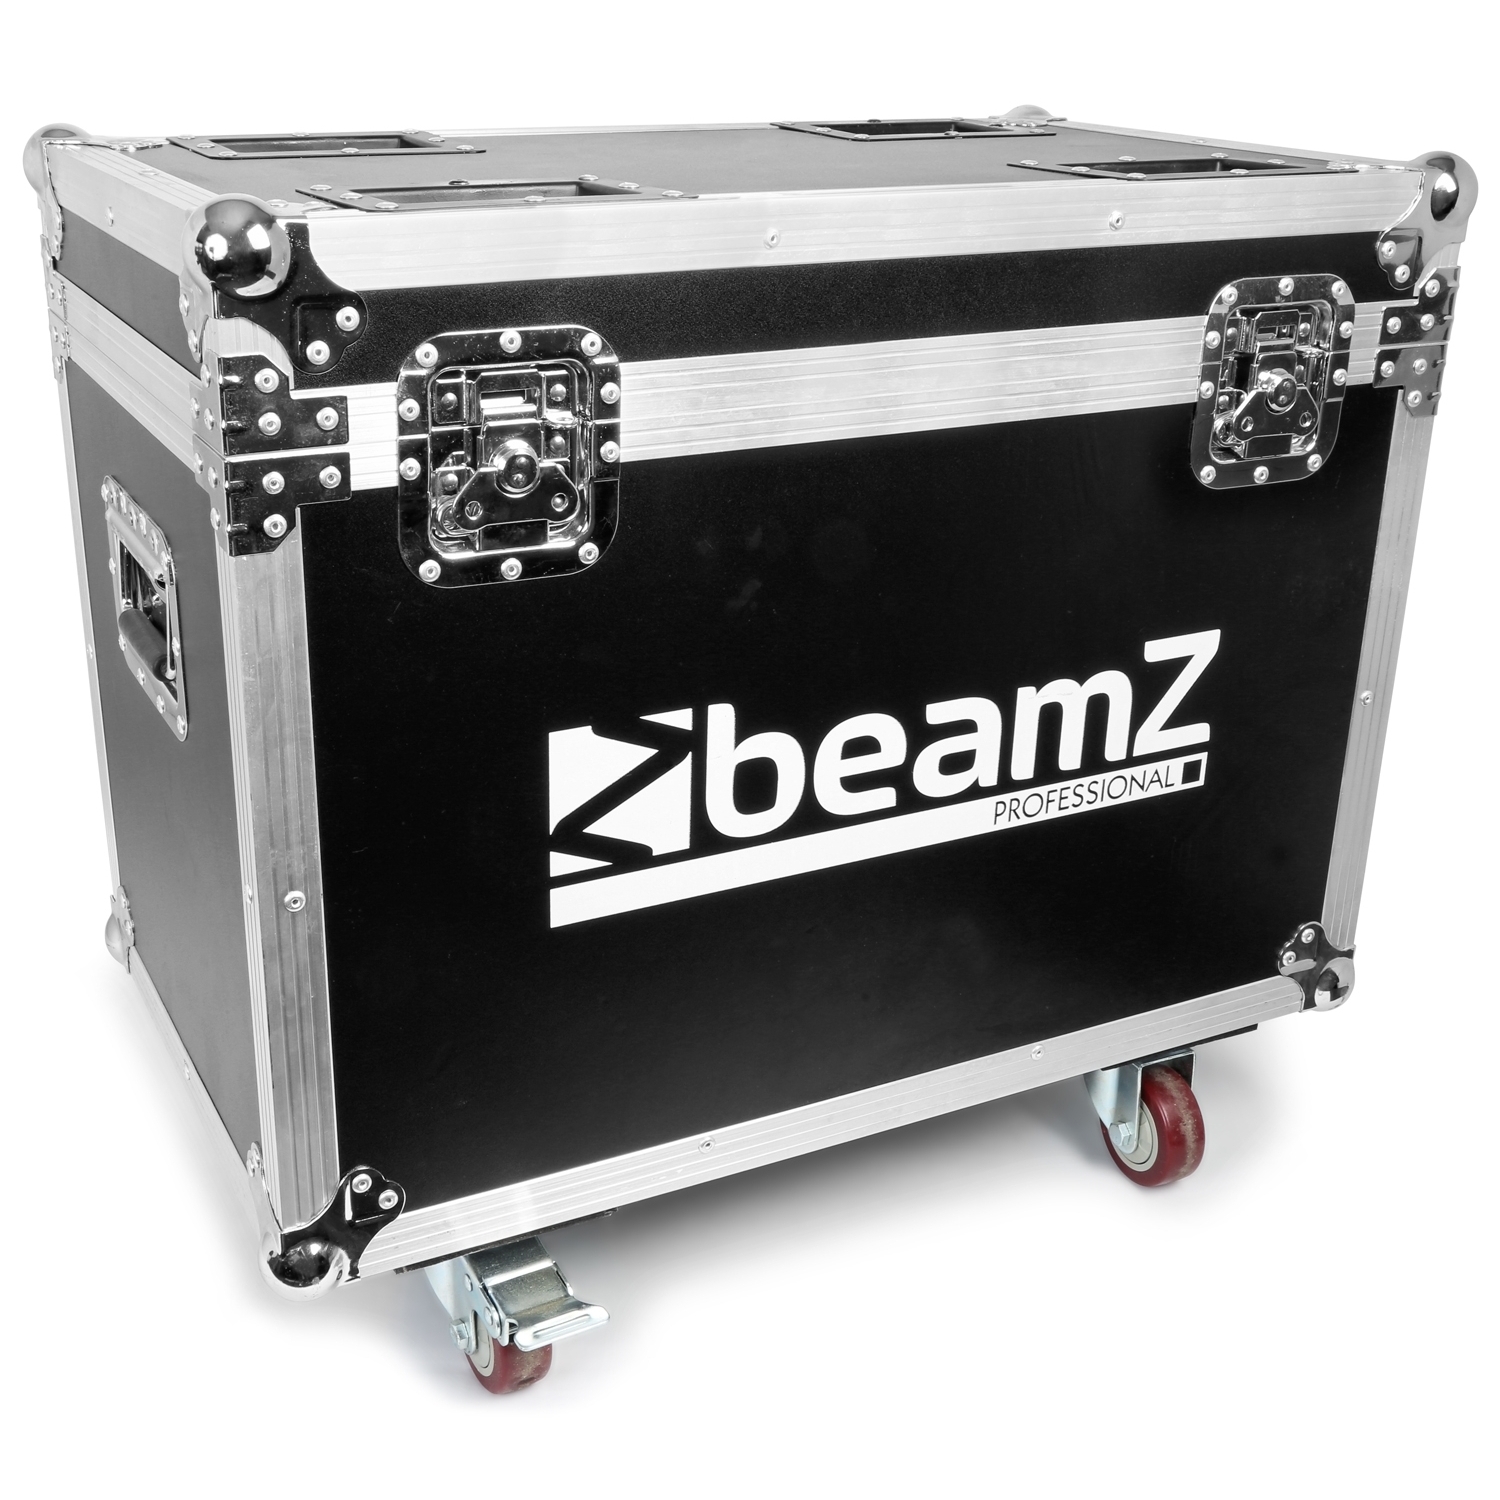 Retourdeal - BeamZ Professional FC740I flightcase voor 2x de IGNITE740